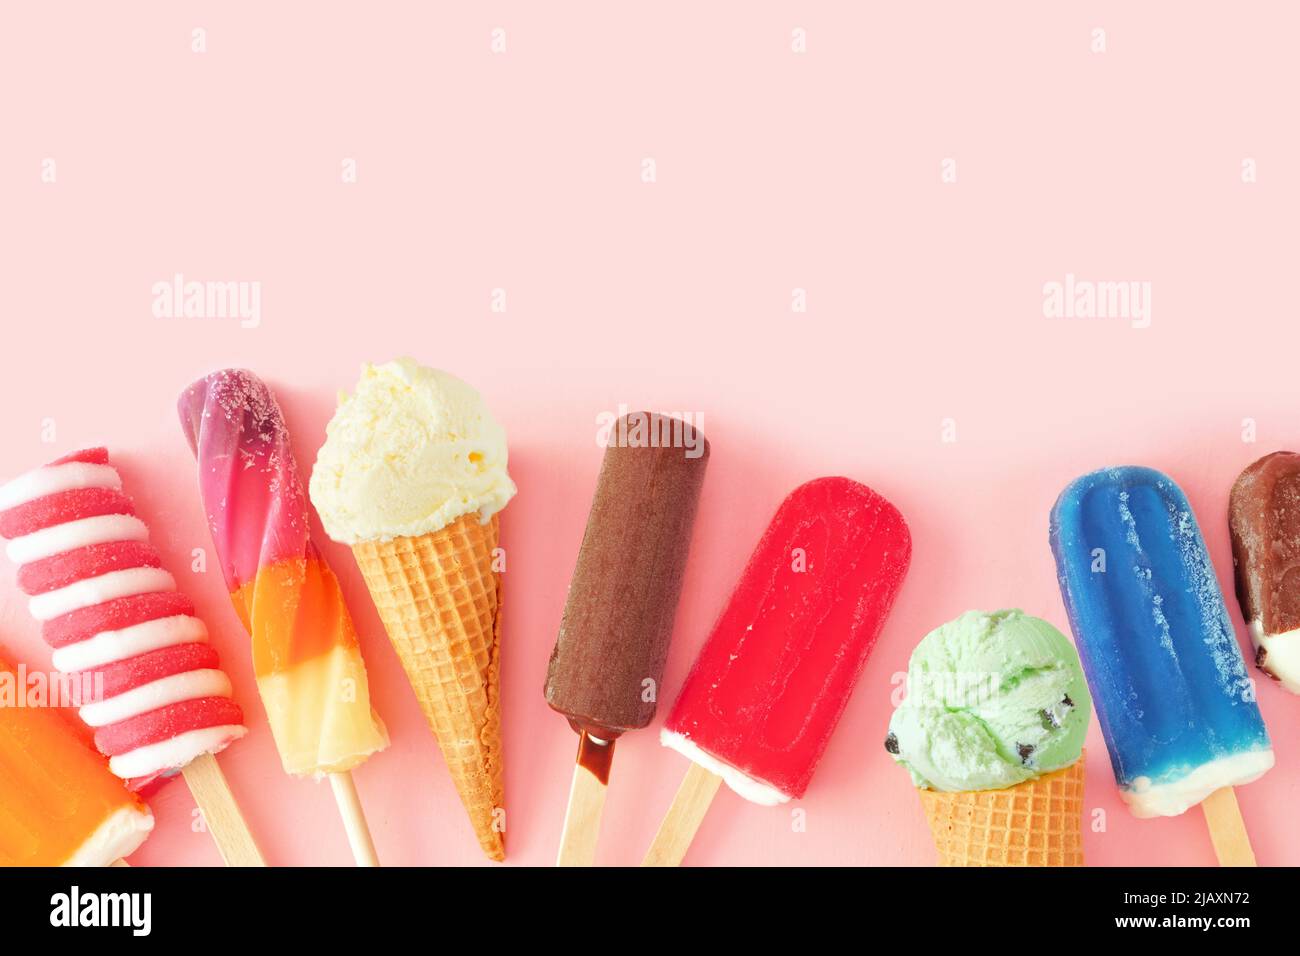 Sammlung von bunten Sommer gefrorenen Desserts. Draufsicht Unterer Rand auf einem rosa Hintergrund. Speicherplatz kopieren. Stockfoto